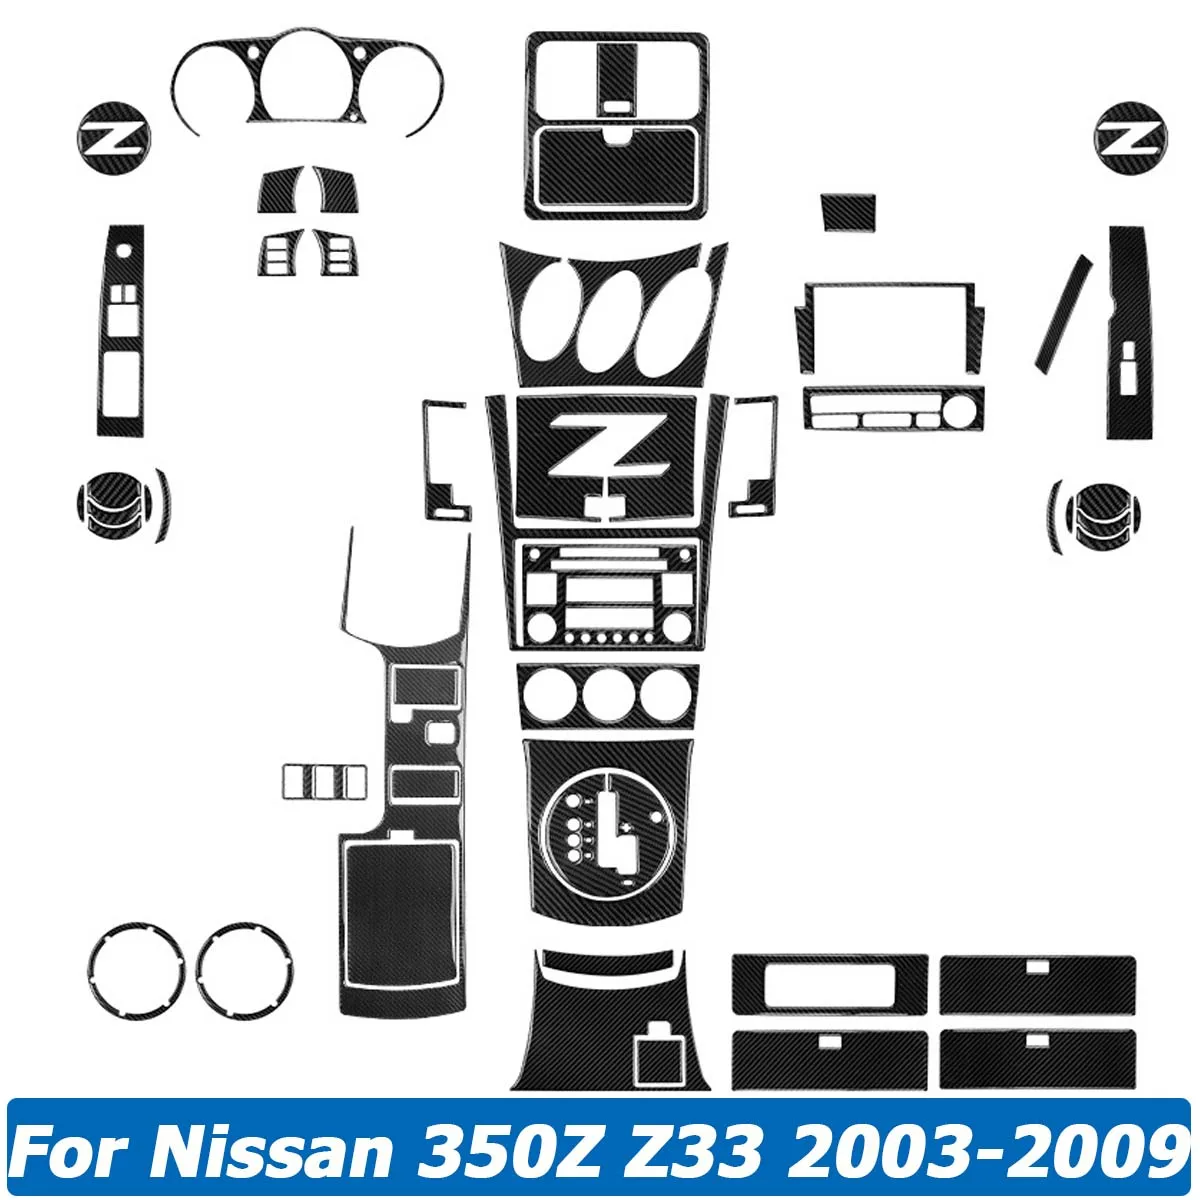 สำหรับ Nissan 350Z Z33 2003-2009คาร์บอนไฟเบอร์สติกเกอร์พวงมาลัย Central Control เกียร์ตกแต่งภายในชุดอุปกรณ์เสริม